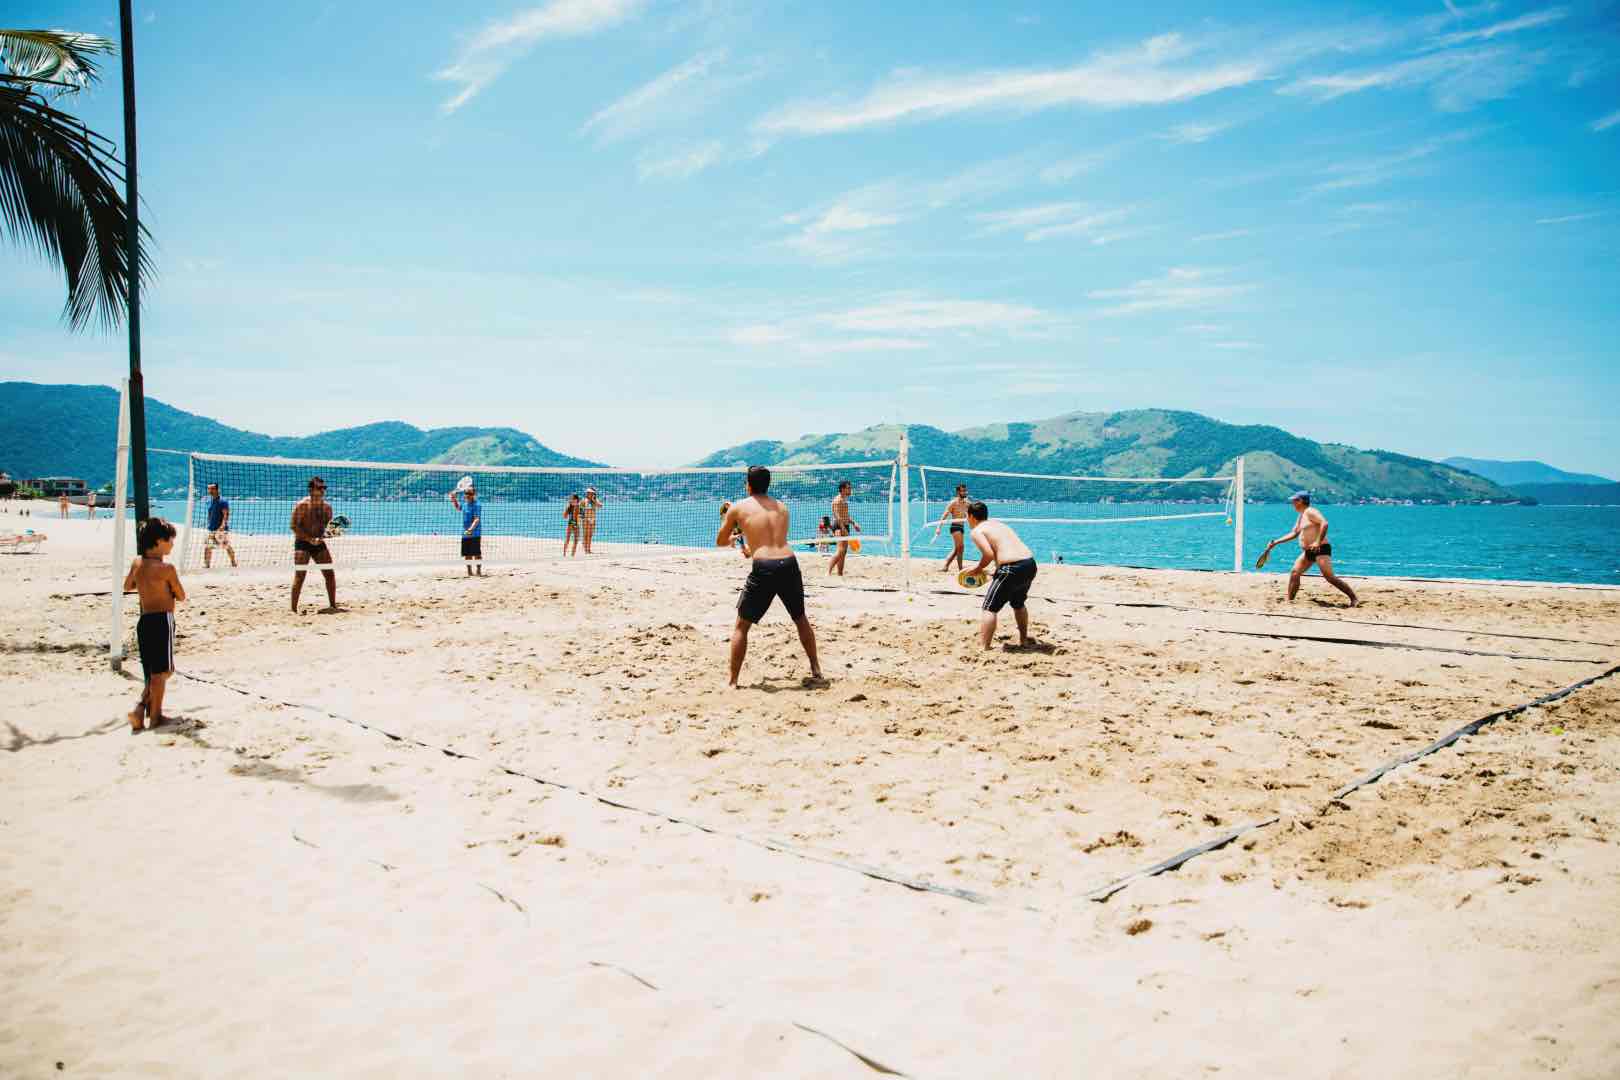 Rio de Janeiro locals playing beach games